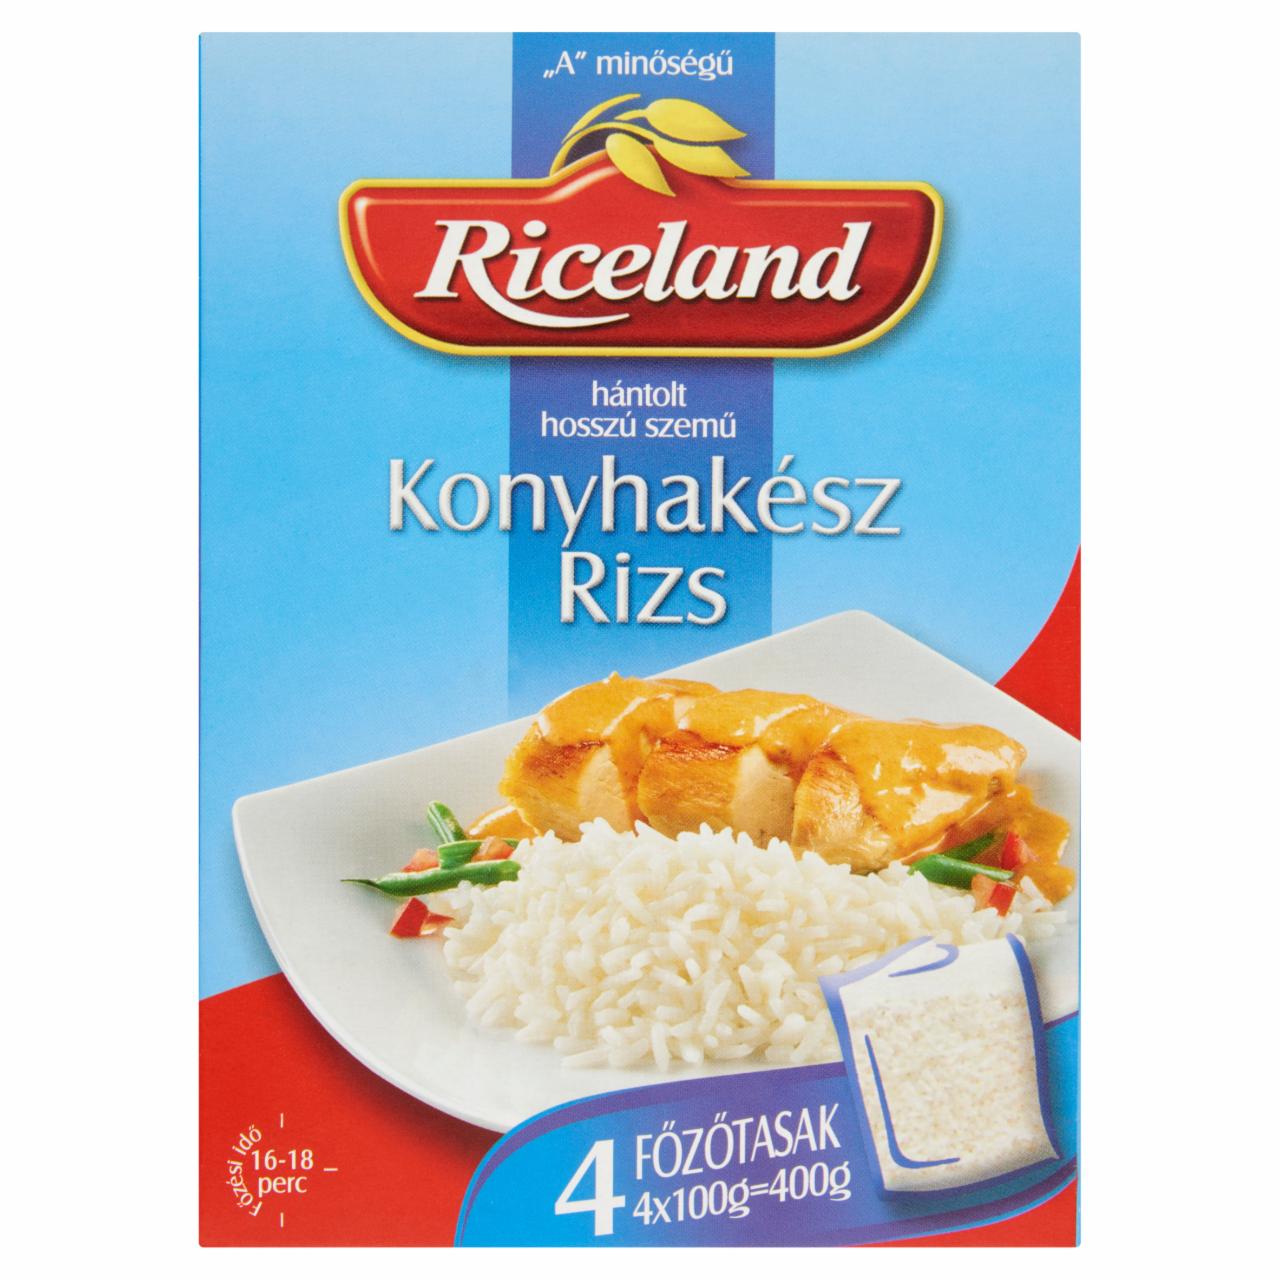 Képek - Riceland Konyhakész rizs 'A' minőségű hántolt hosszú szemű 4 x 100 g